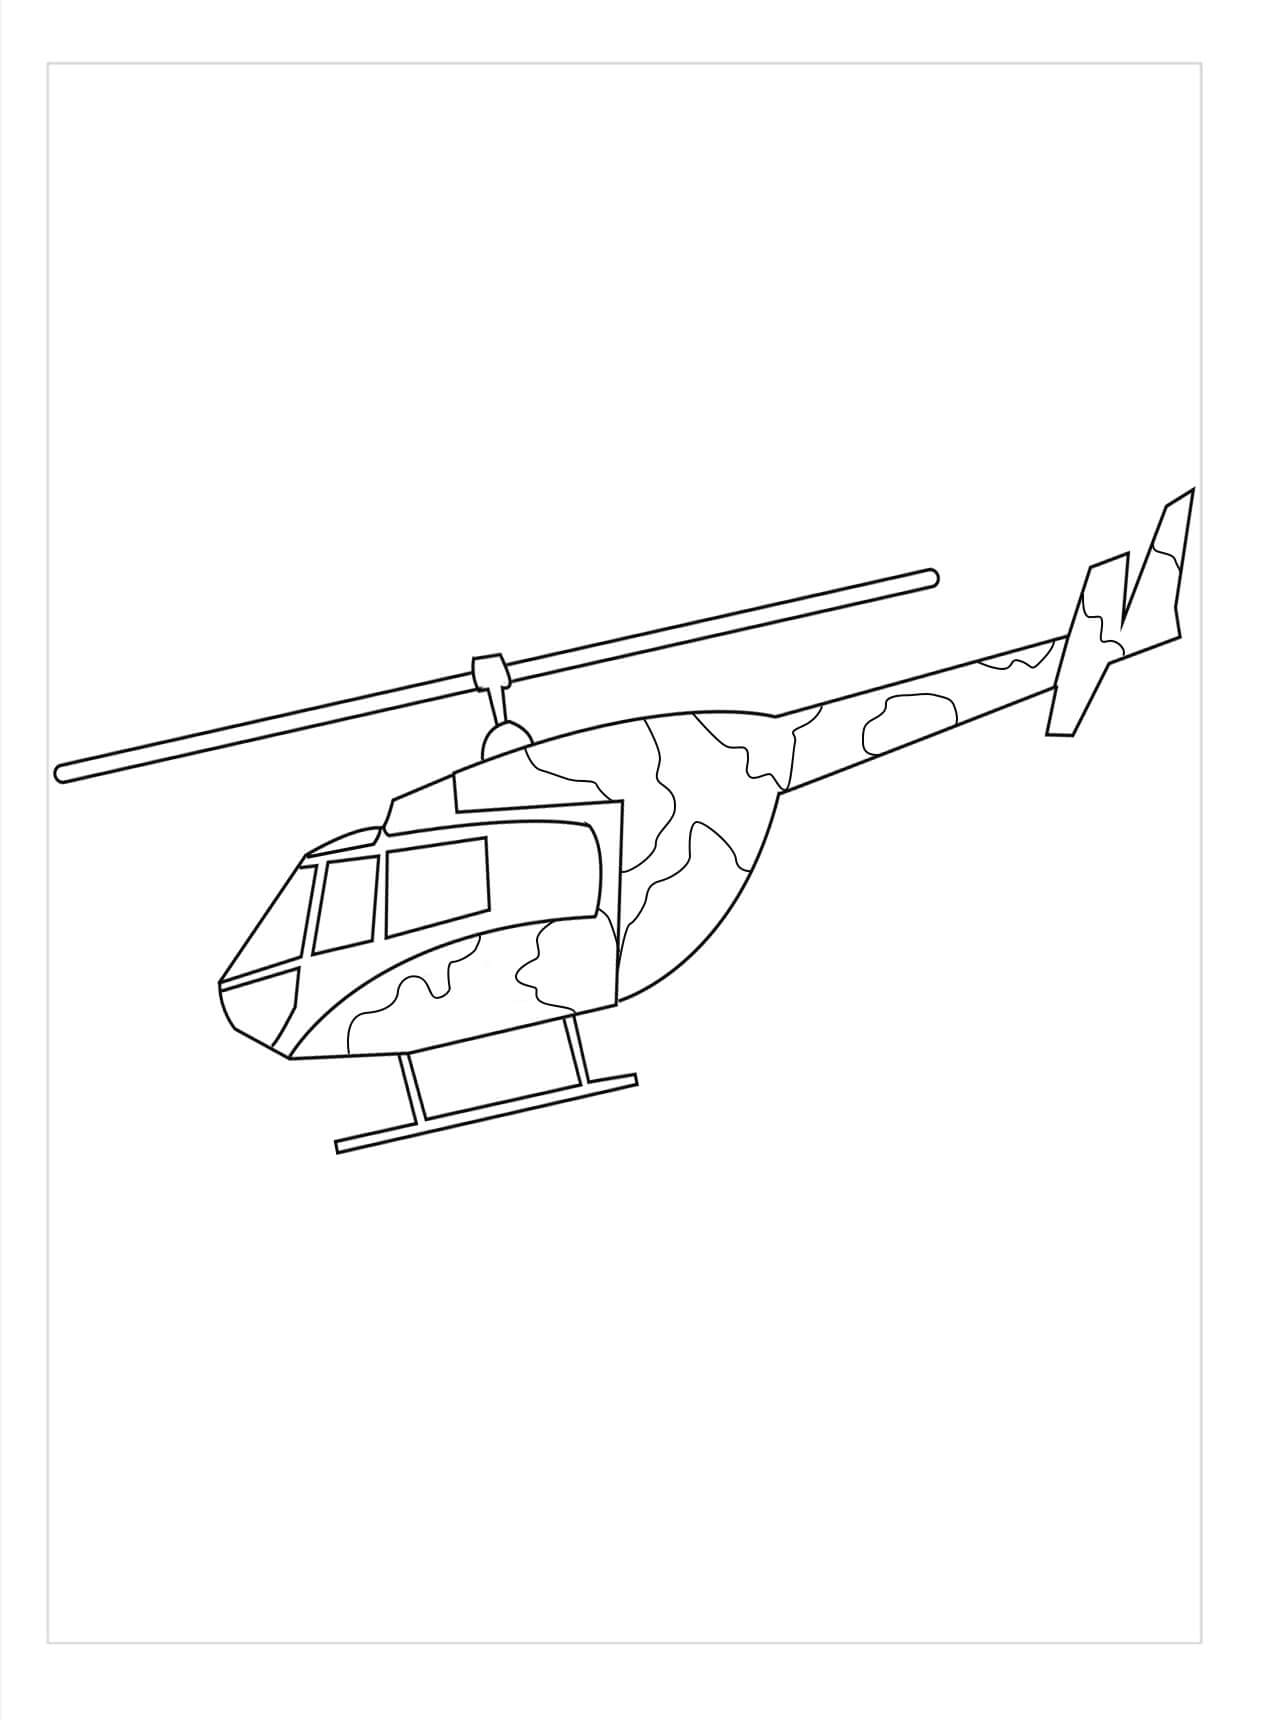 Helicóptero Básico del Ejército